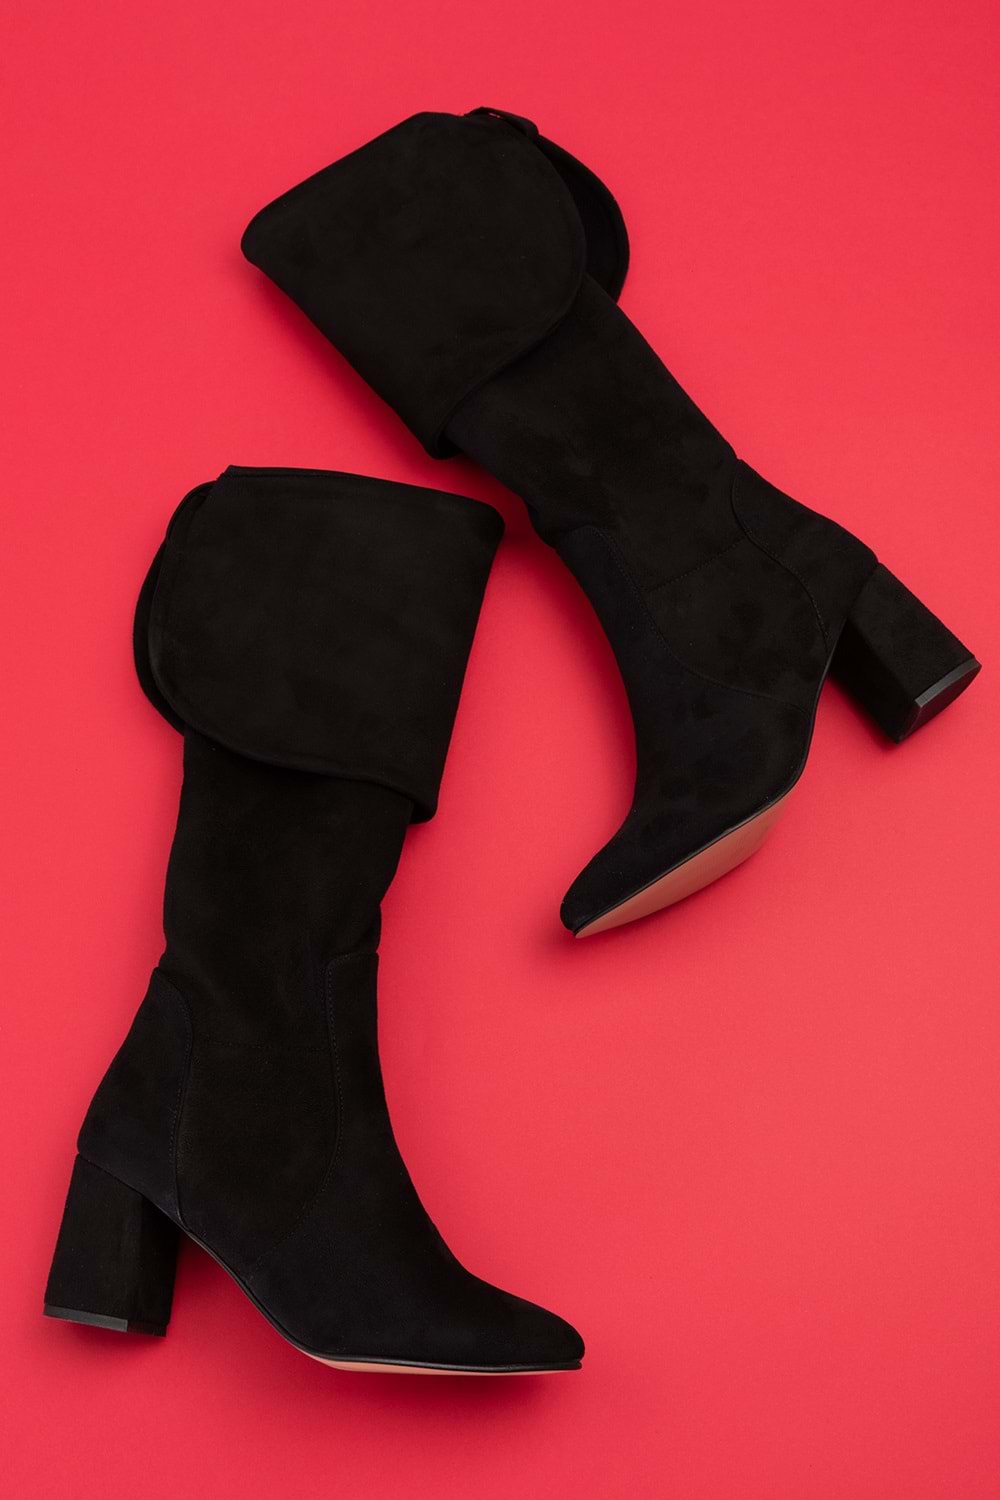 Gondol Kadın Diz Üstü Çorap Çizme anl.2535 - Siyah - 40